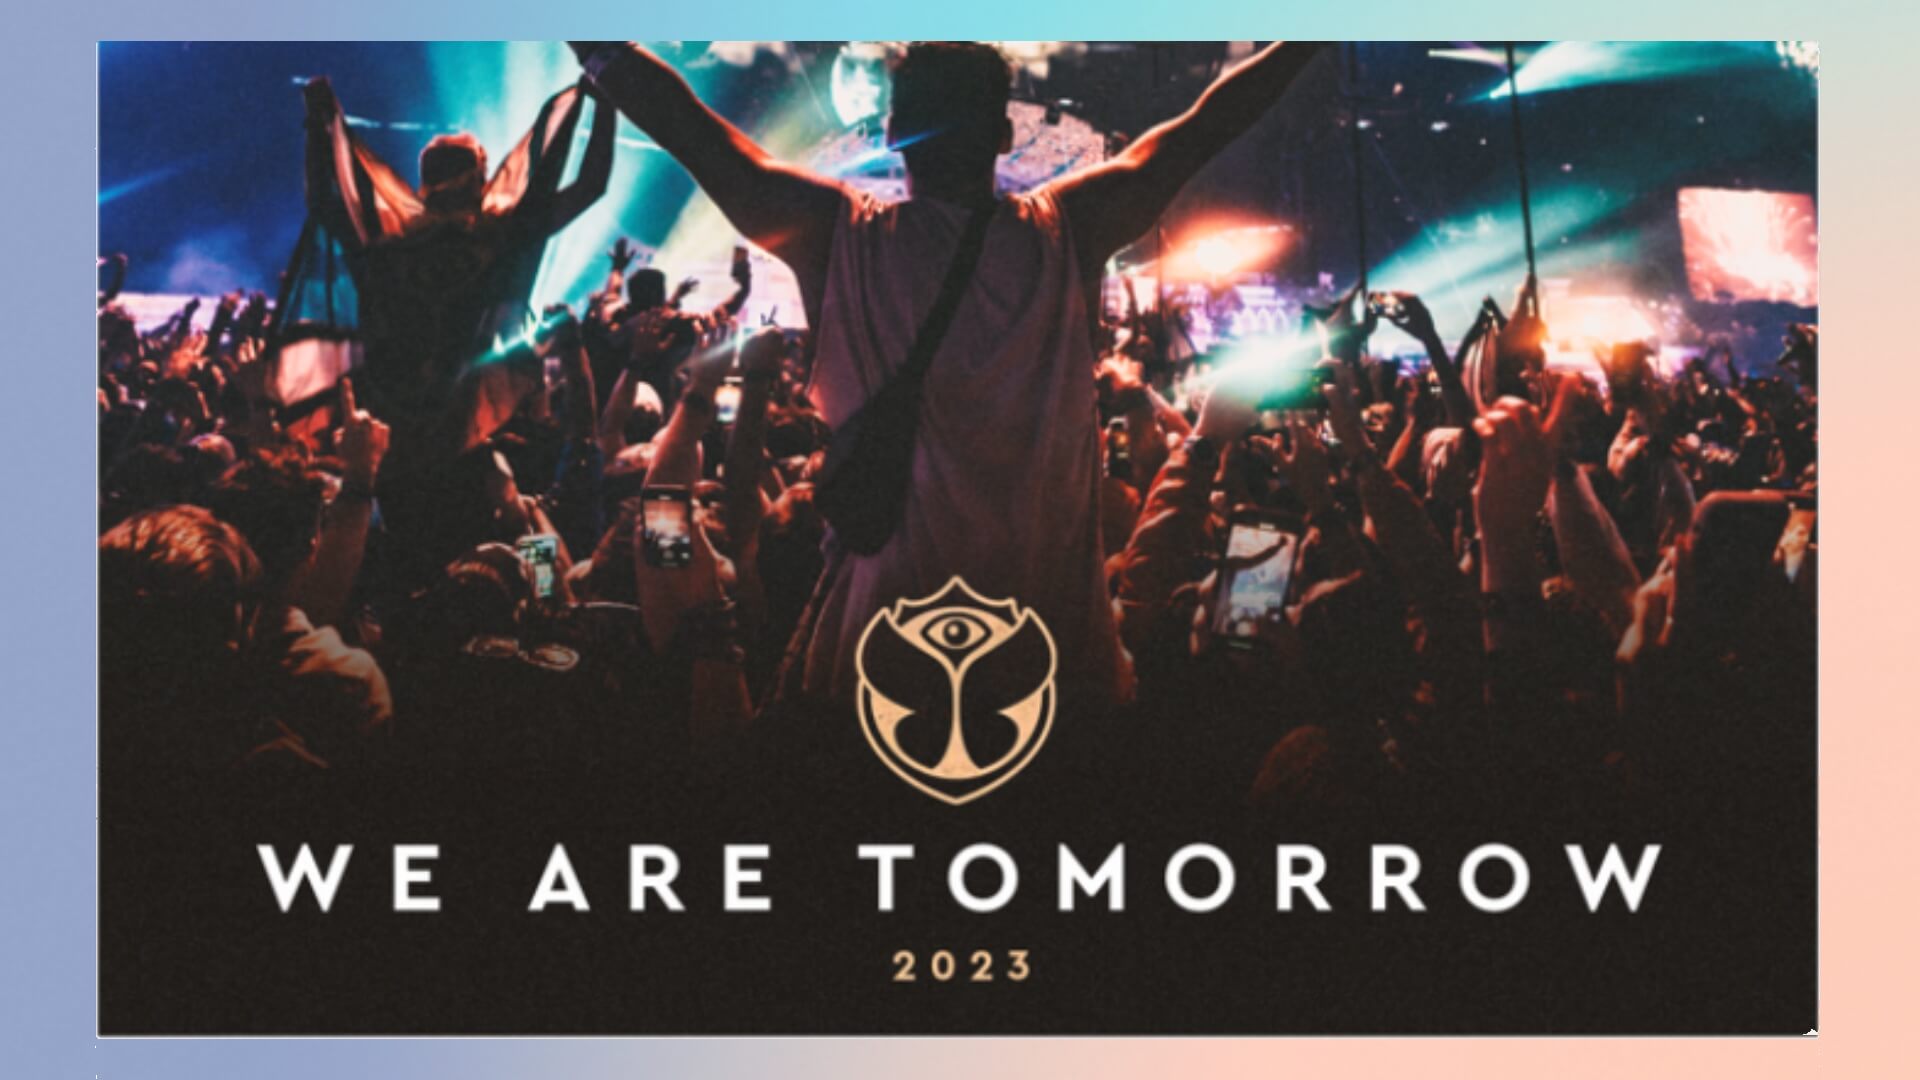 Documentário do Tomorrowland recebe o maior prêmio de publicidade do mundo